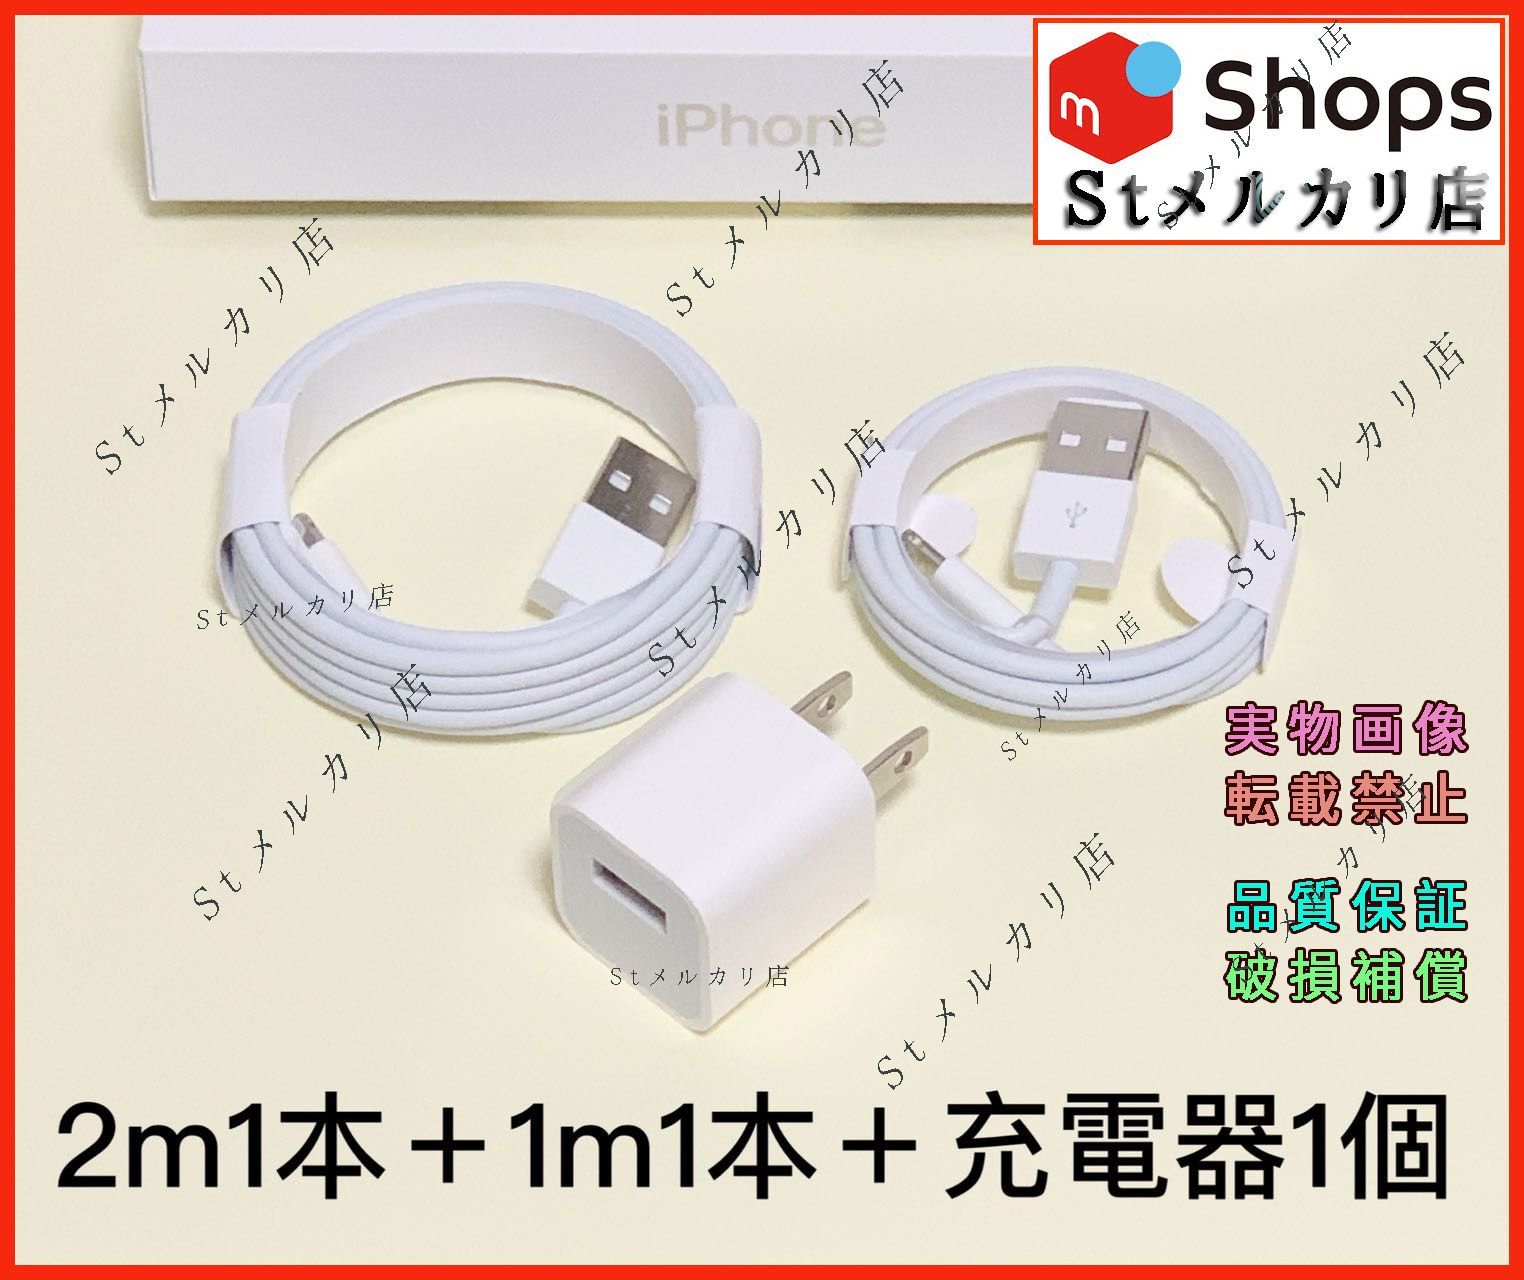 1個 充電器 2m1本 iPhone タイプC 白 充電ケーブル (9vX) - スマホ